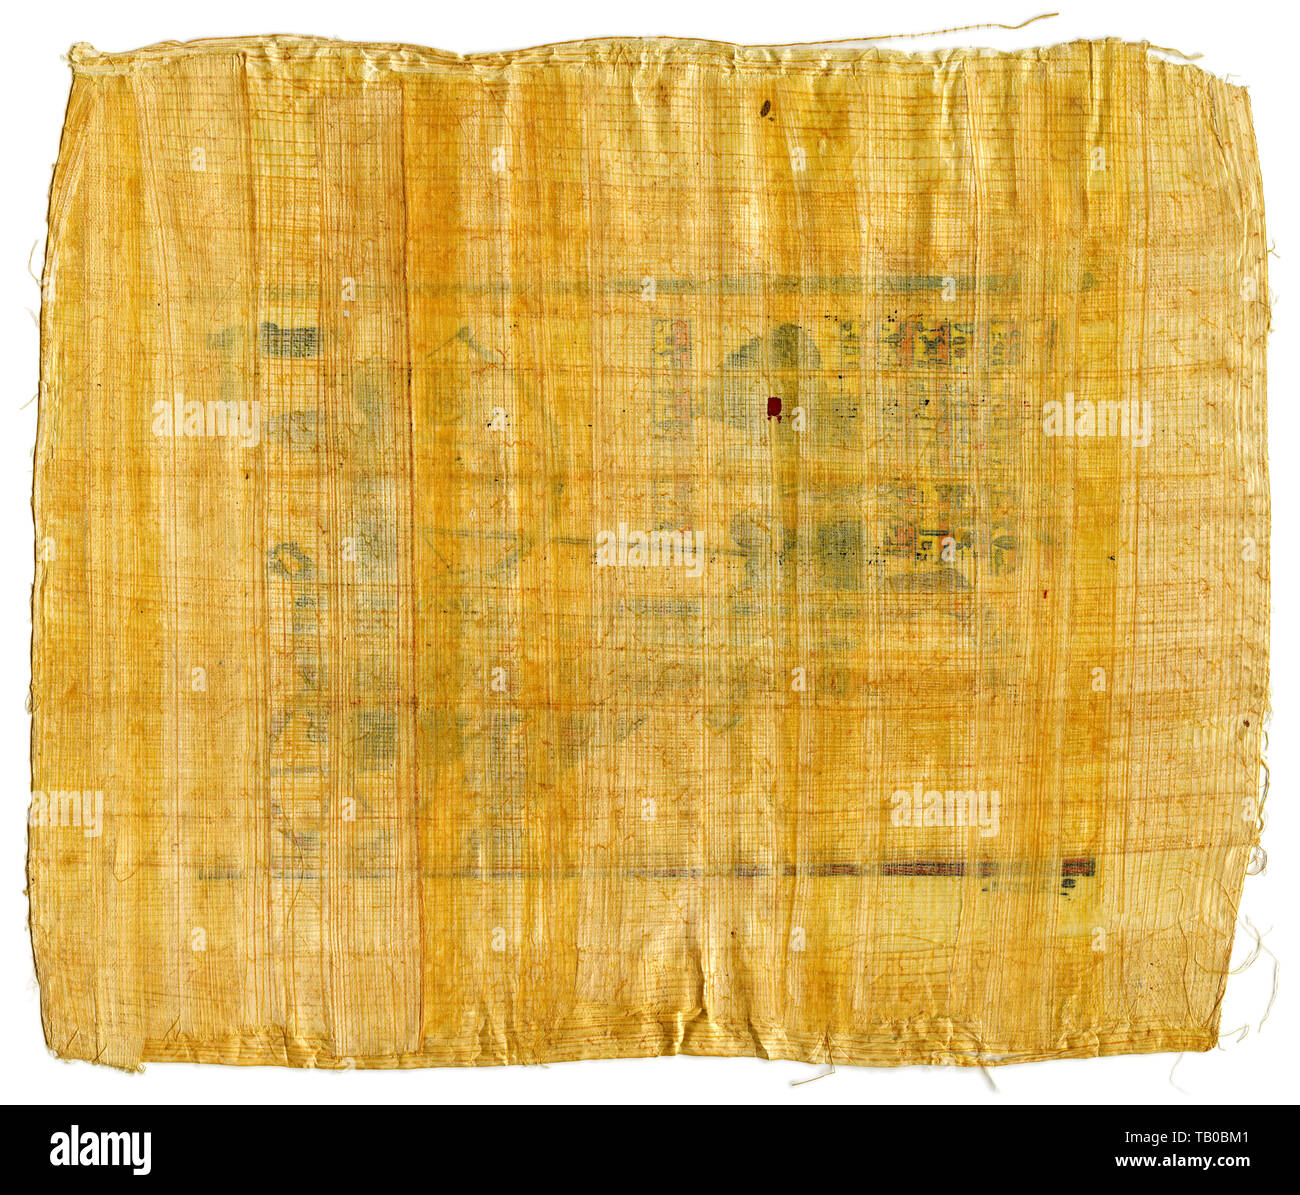 10 feuilles de véritable papyrus égyptien vierges plain paper & hiéroglyphes info scroll